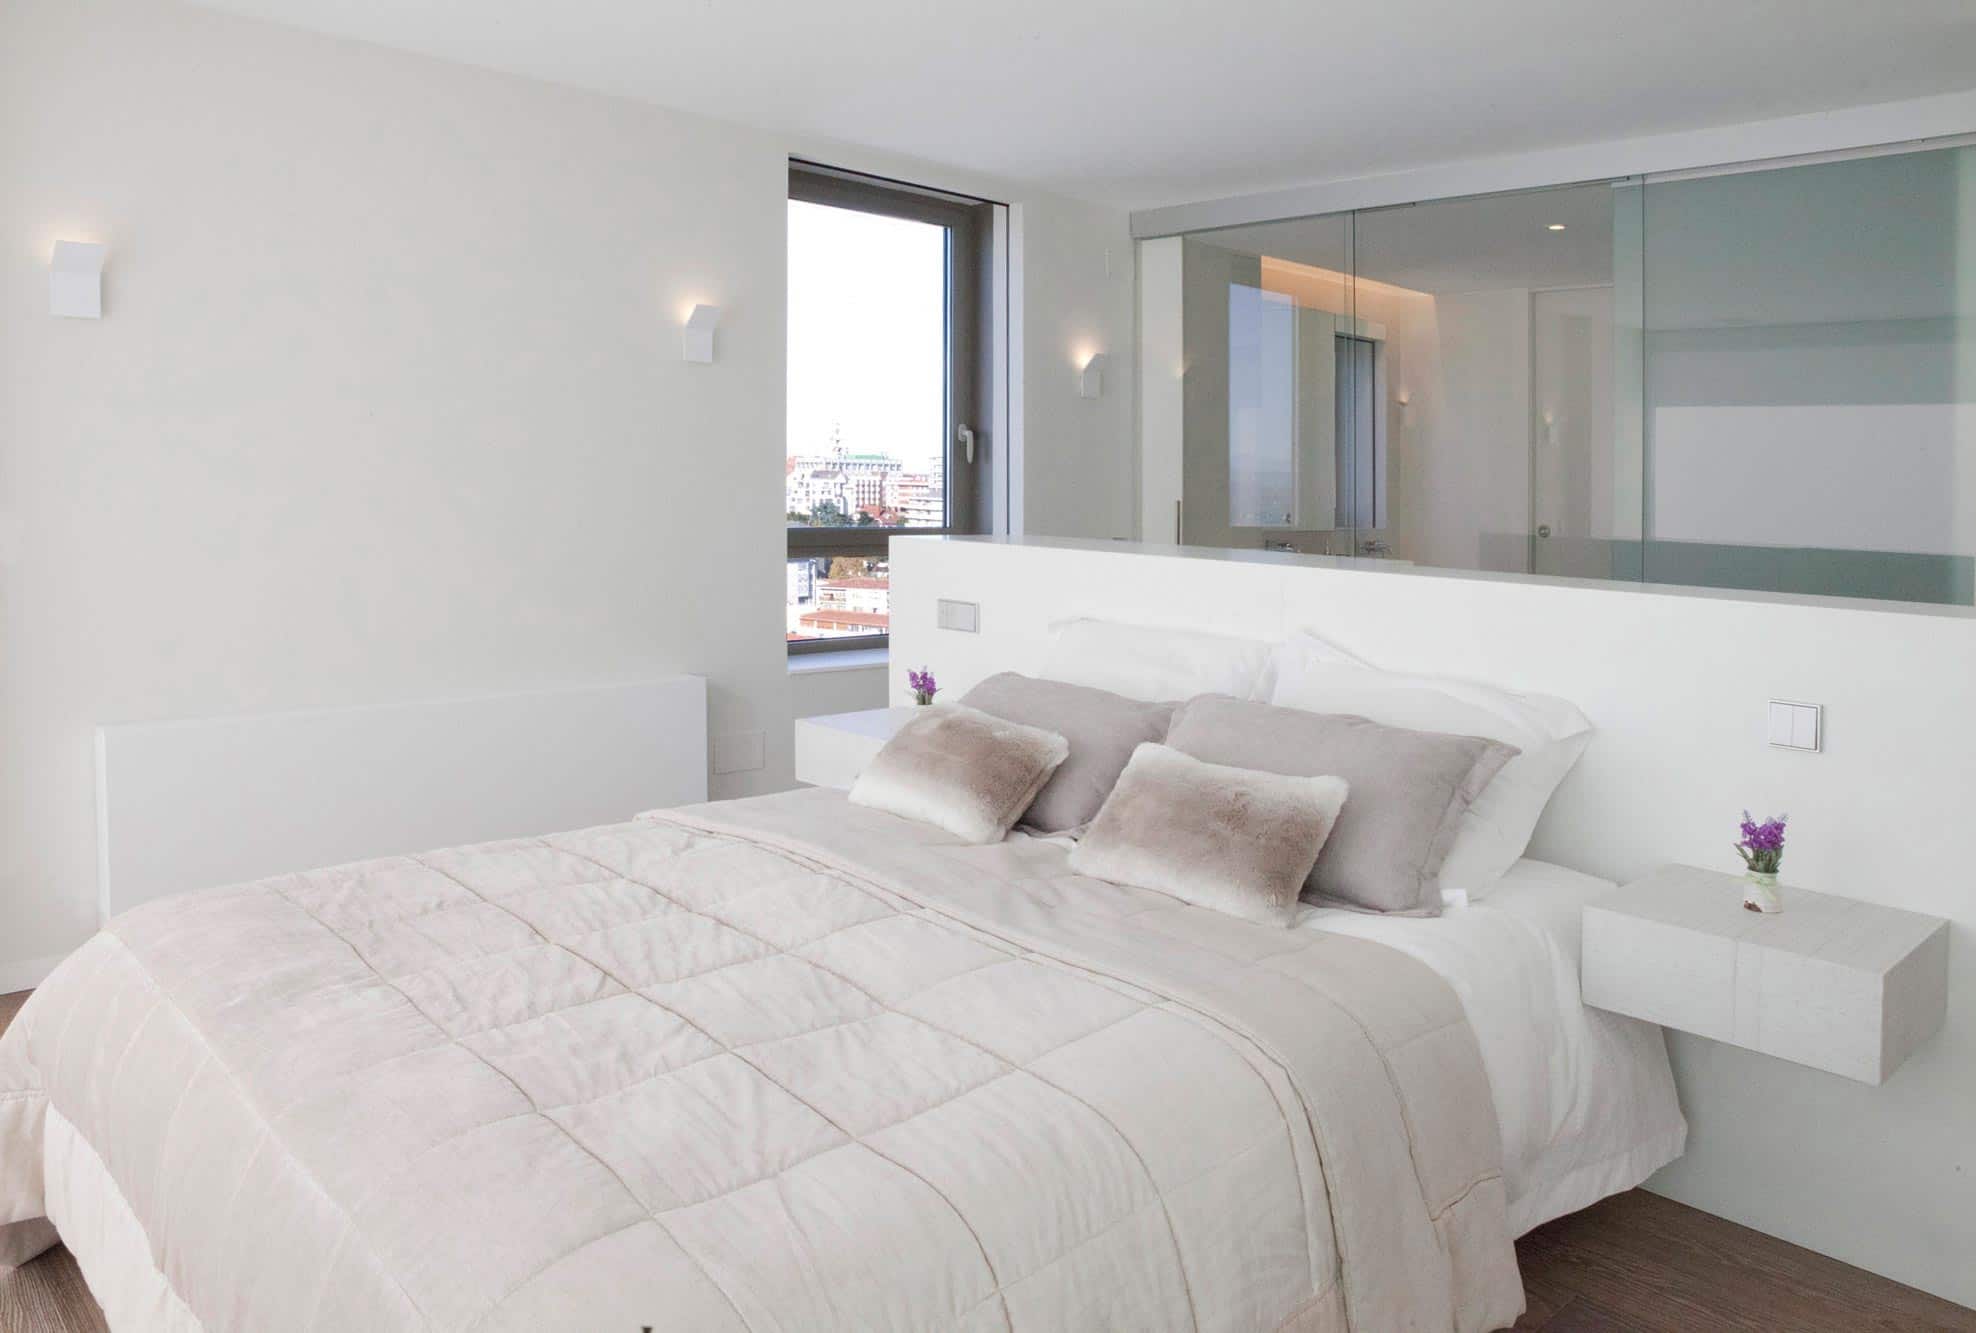 Dormitorio abierto a baño en reforma integral de piso de lujo diseñada por Moah Diseño de Interiores en Santander